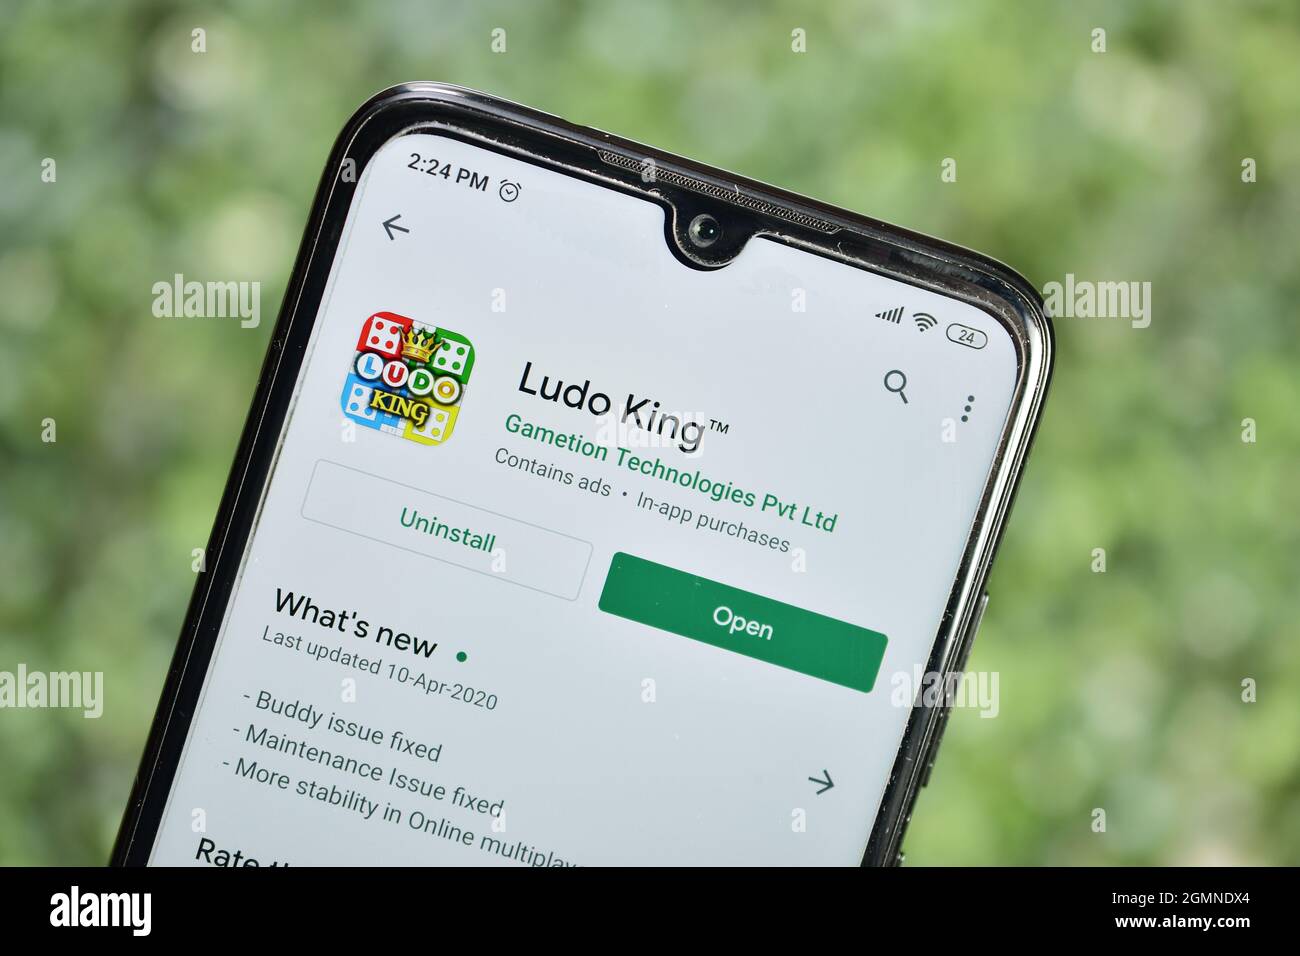 New Delhi, India, 12 Aprile 2020:- applicazione Ludo King su smartphone Foto Stock